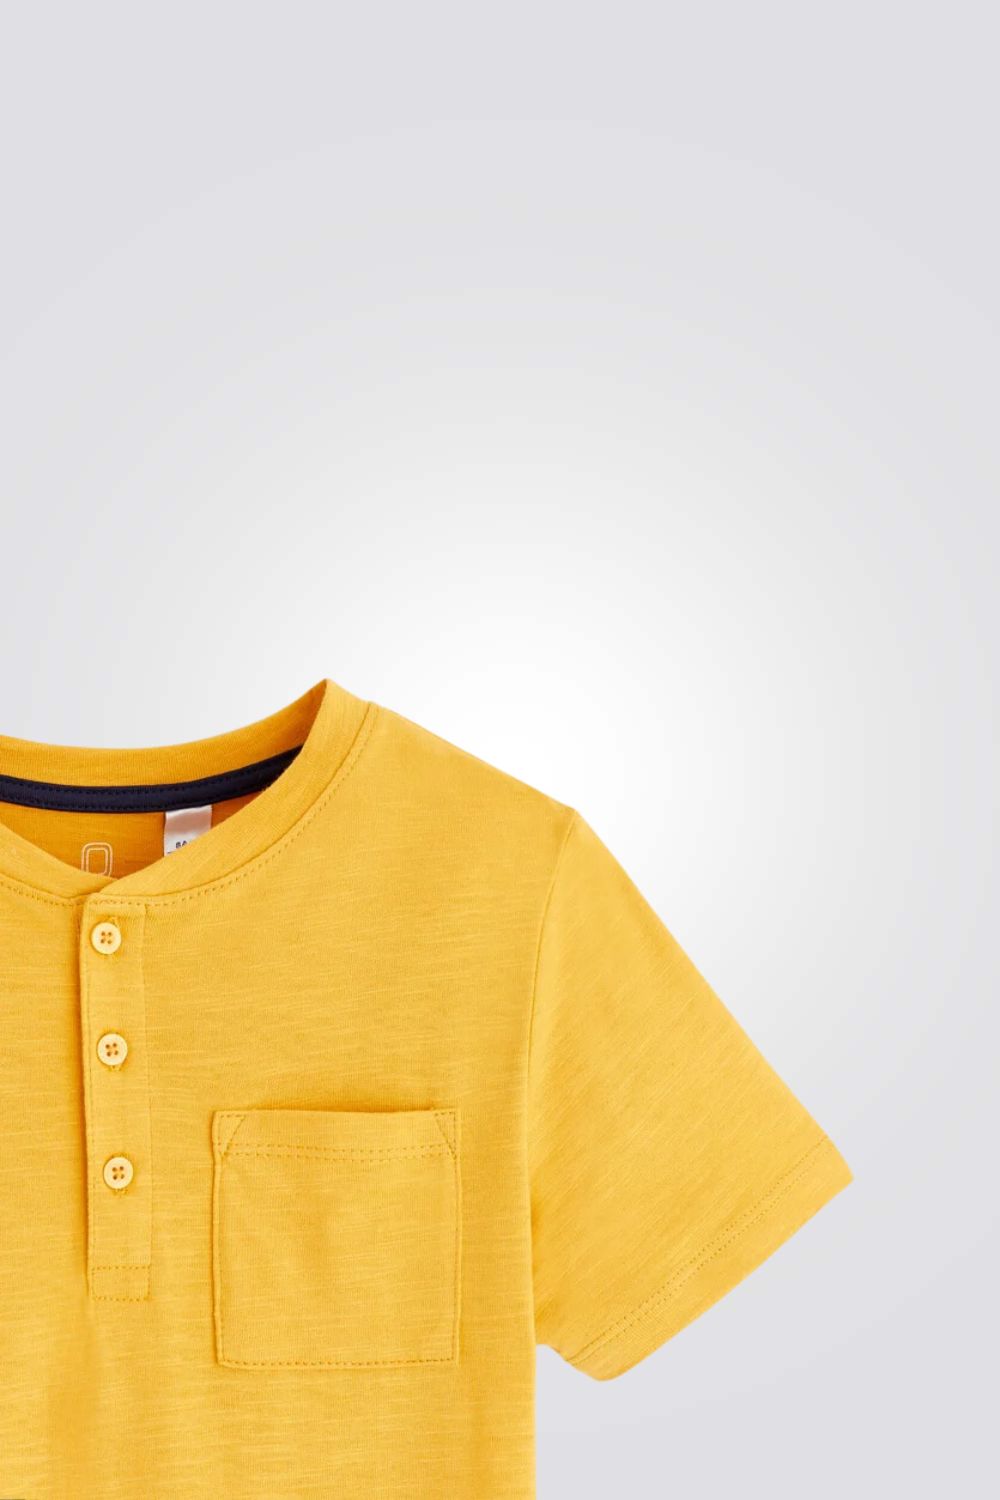 טישירט לילדים בצבע צהוב